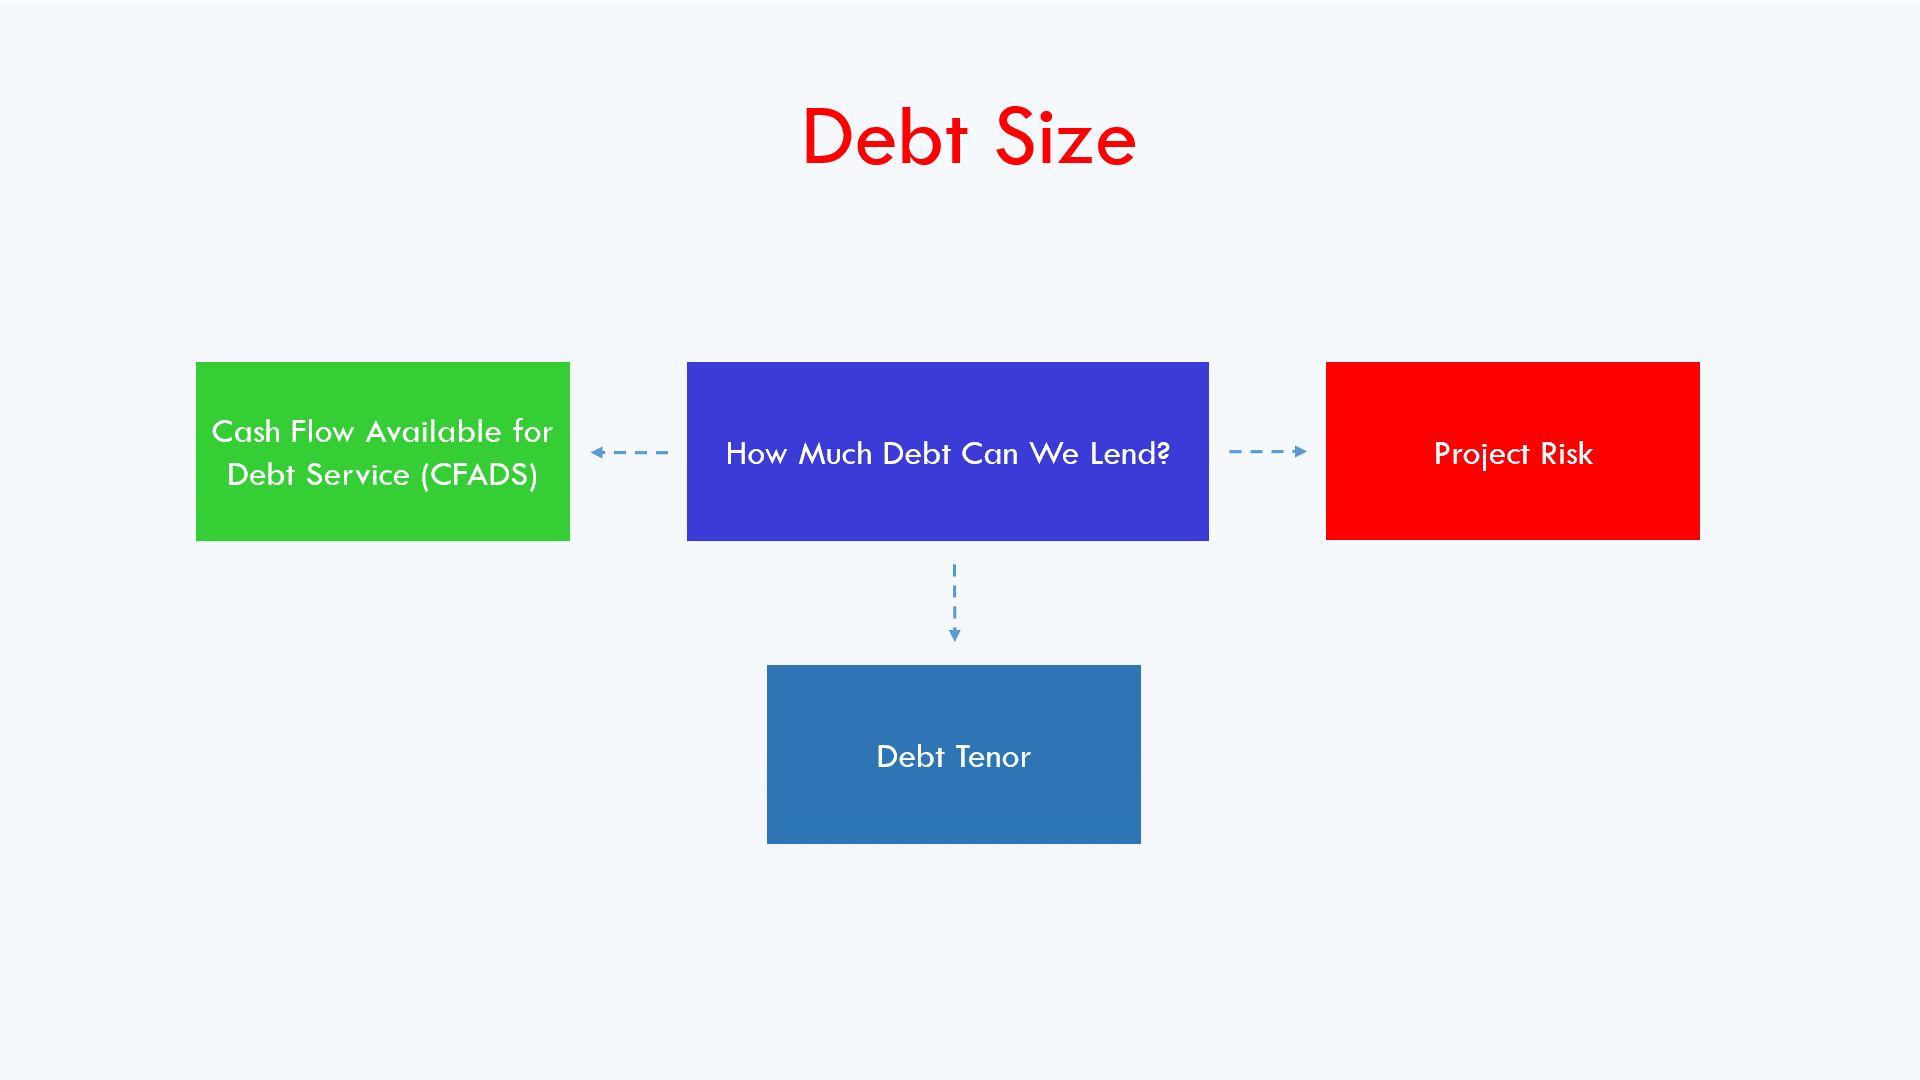 Debt sizing